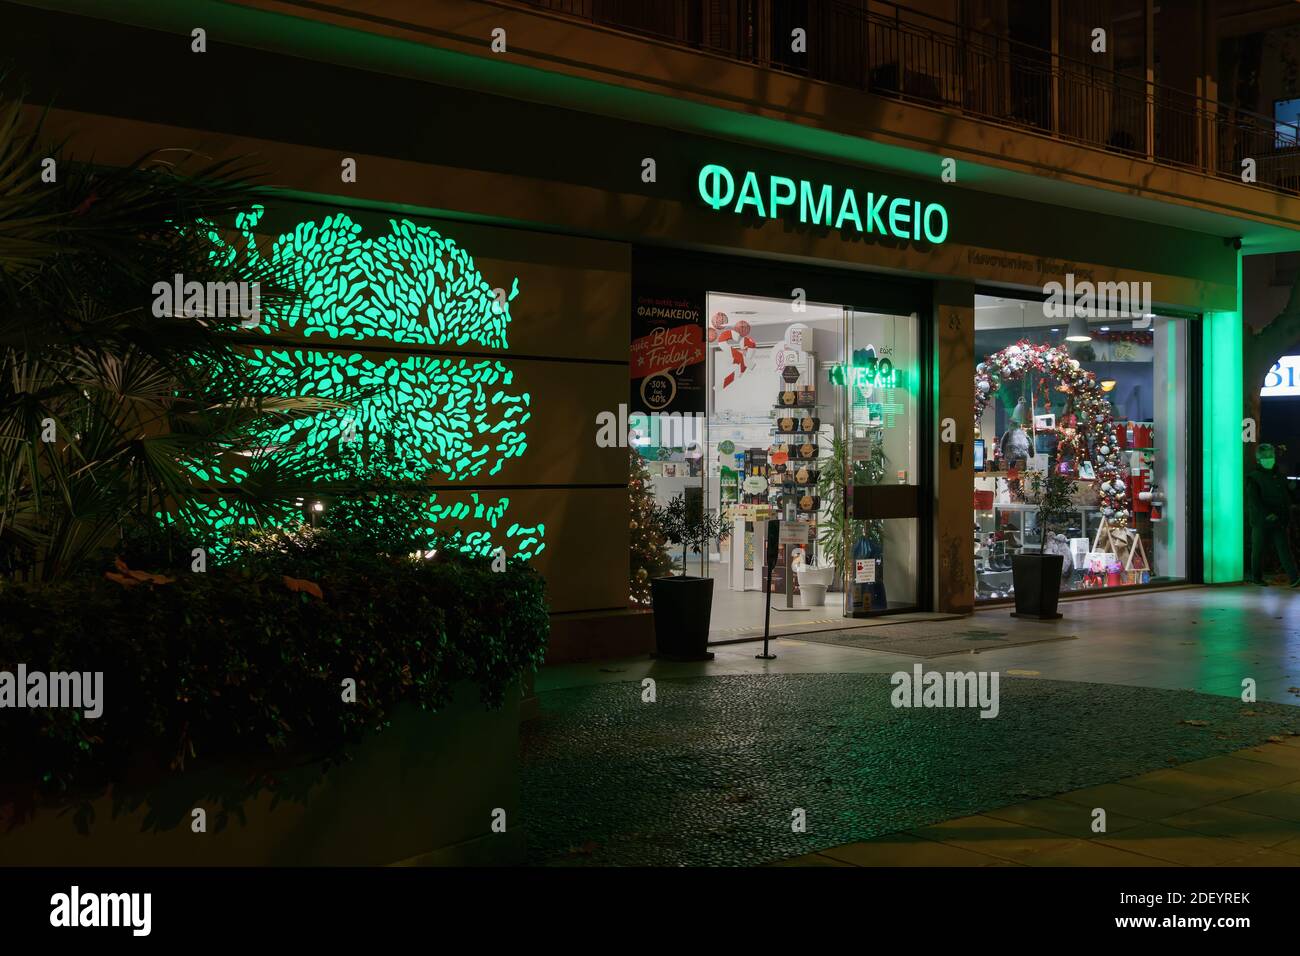 Thessaloniki, Griechenland Griechisch geöffnet Apotheke Eingang. Blick von außen auf den hellenischen Pharmaladen mit beleuchtetem grünen Schild und Schaufenster. Stockfoto